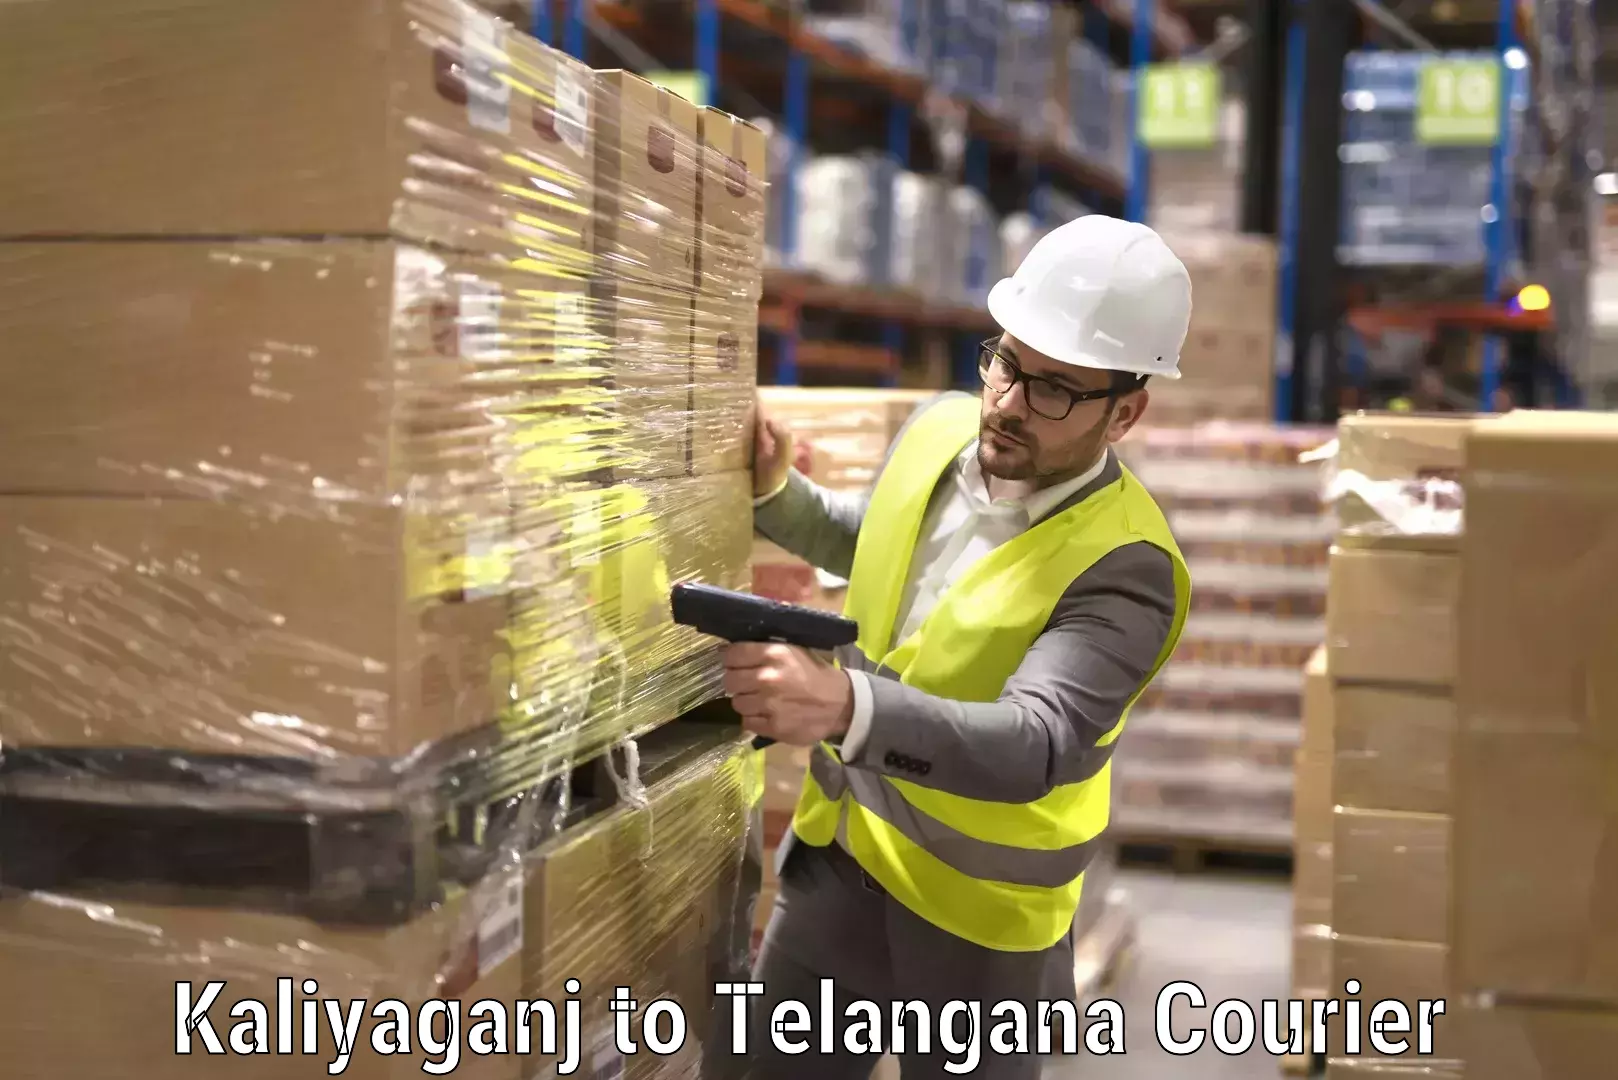 Furniture moving specialists Kaliyaganj to Telangana